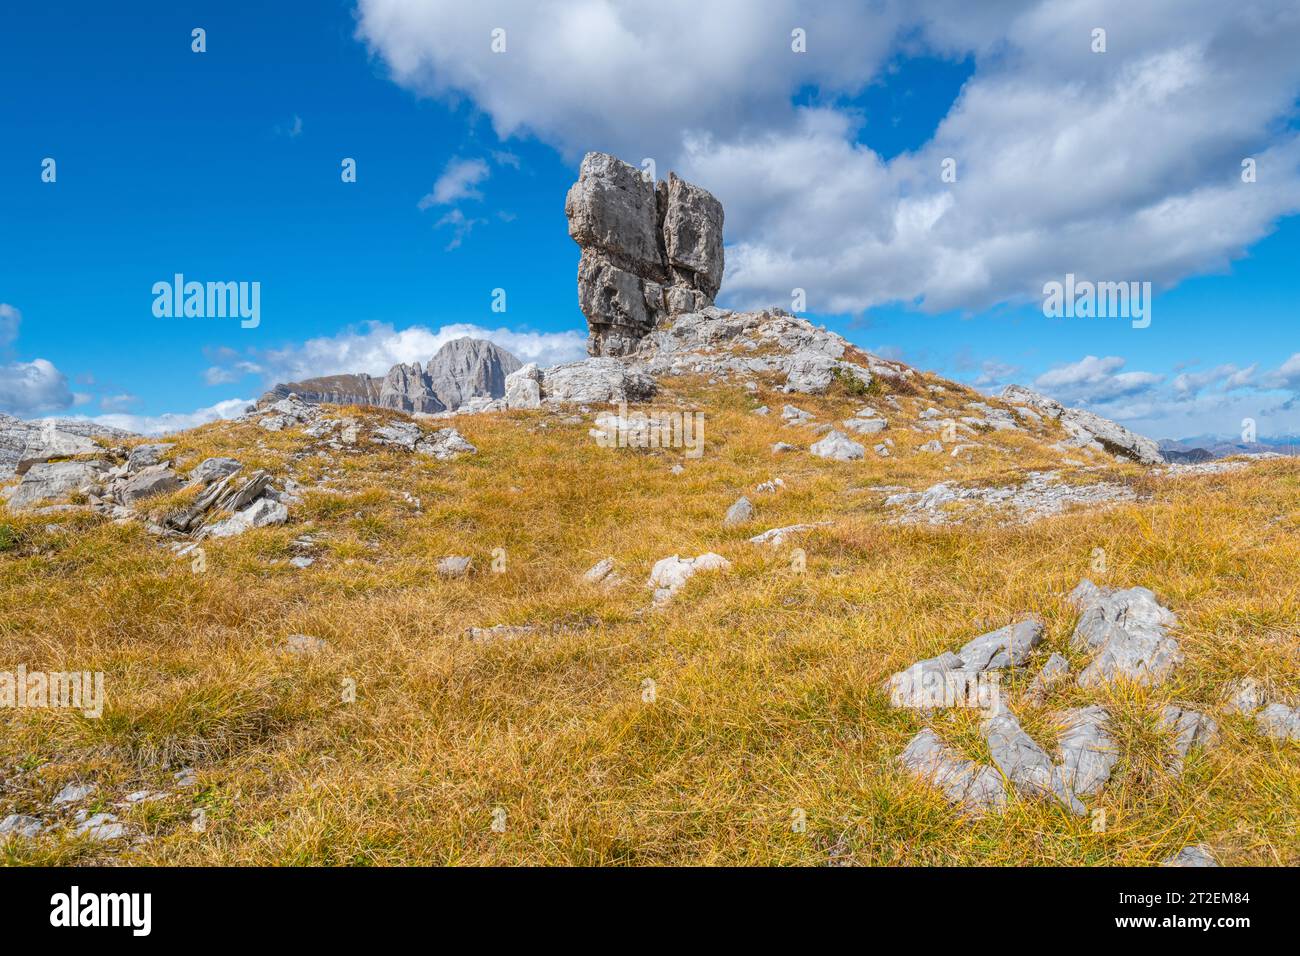 Grand rocher de calcaire autoportant au sommet d'une petite colline couverte d'herbe d'automne brune, contre un ciel bleu avec des nuages Banque D'Images